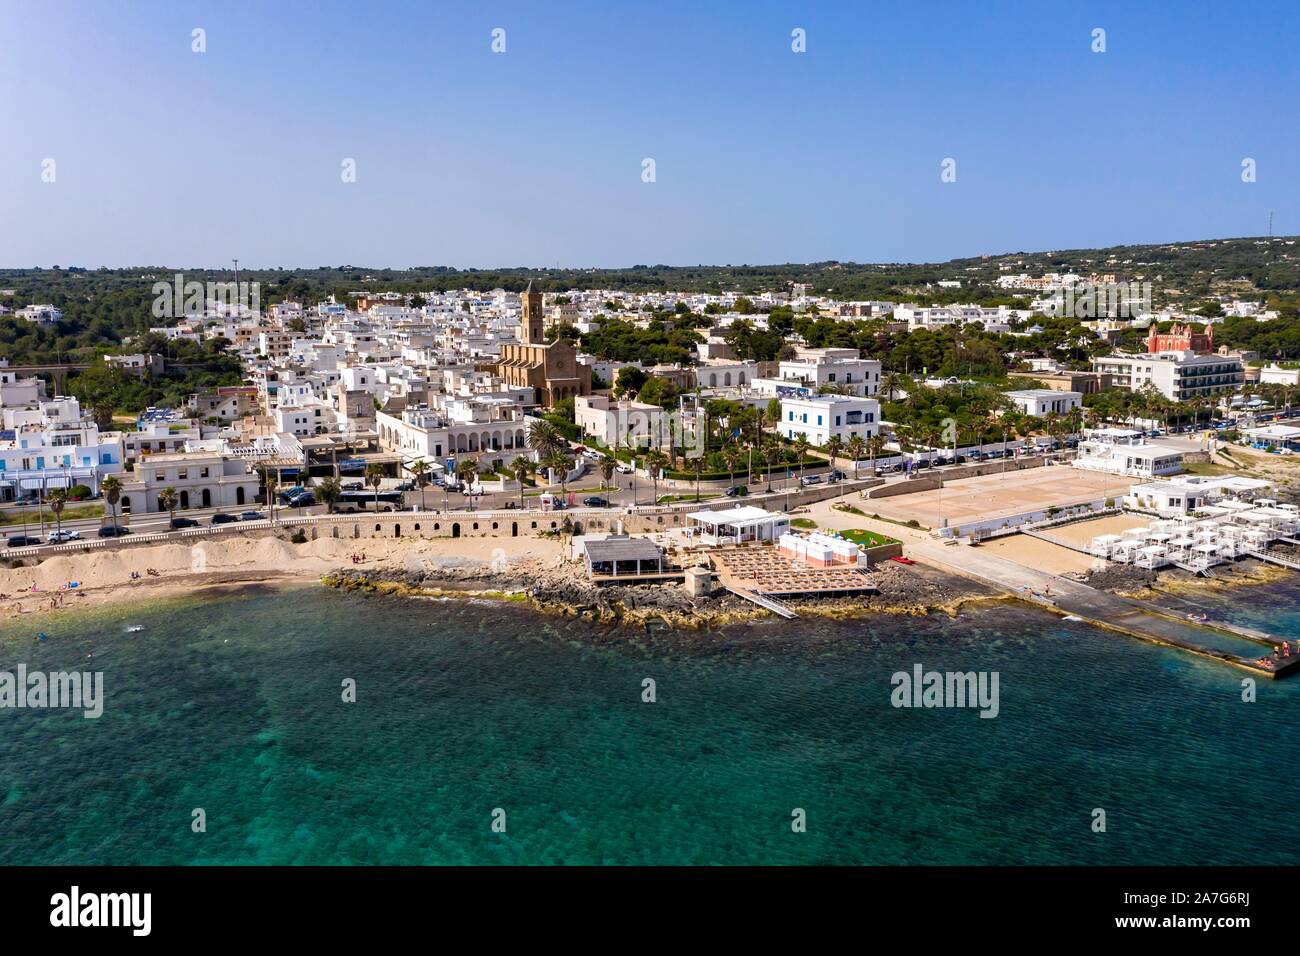 Vista aérea, vista de la ciudad con playa, Santa Maria di Leuca, provincia de Lecce, península de Salento, en Apulia, Italia Foto de stock